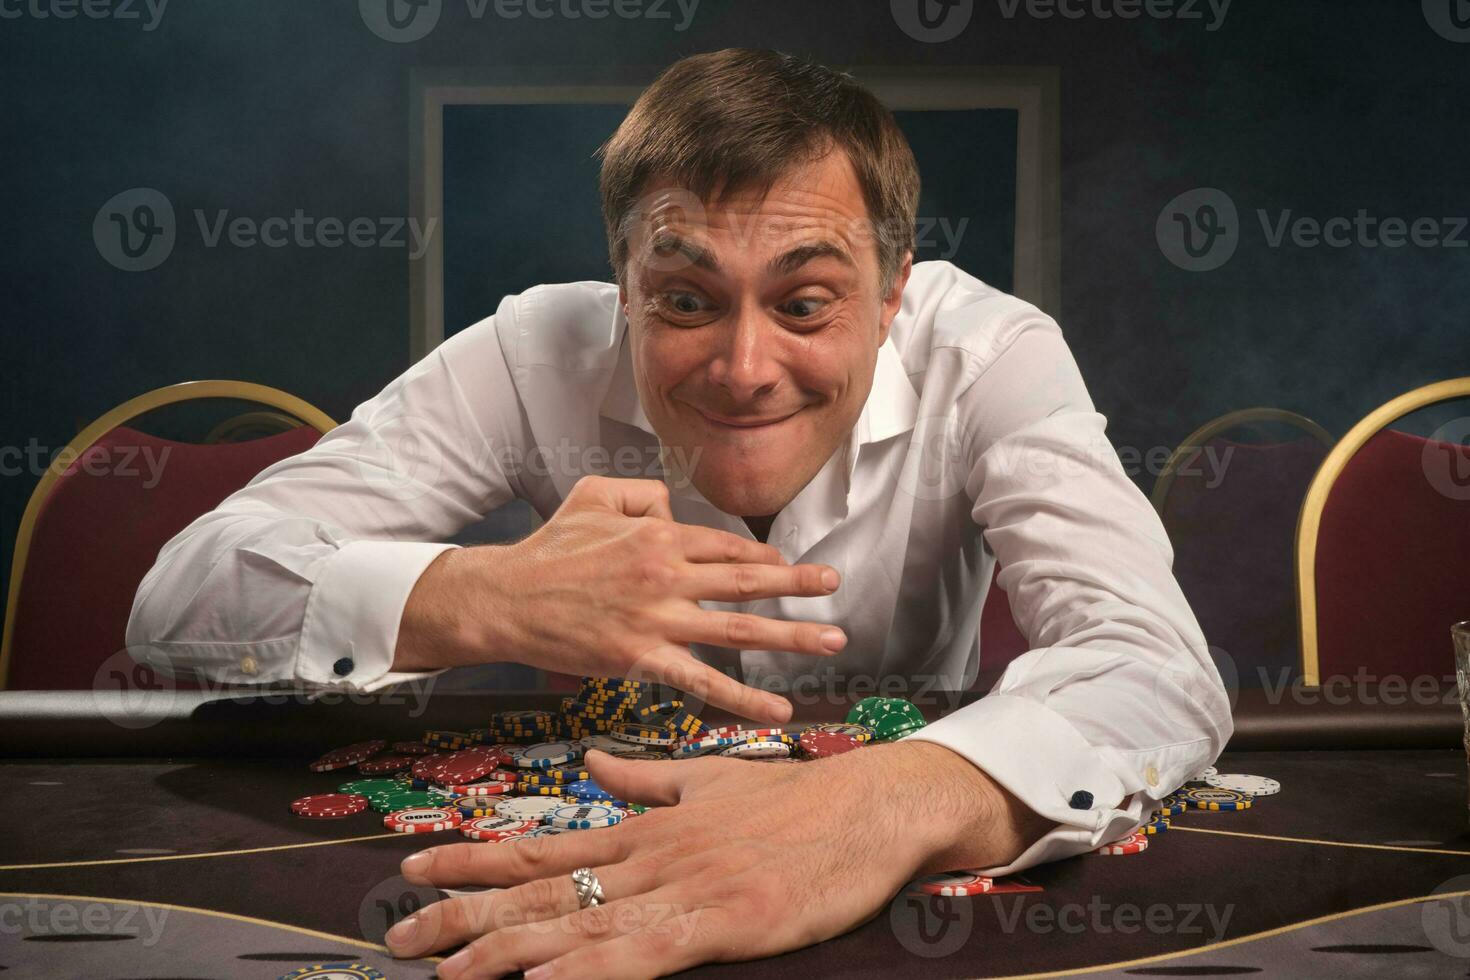 stilig emotionell man är spelar poker Sammanträde på de tabell i kasino. foto